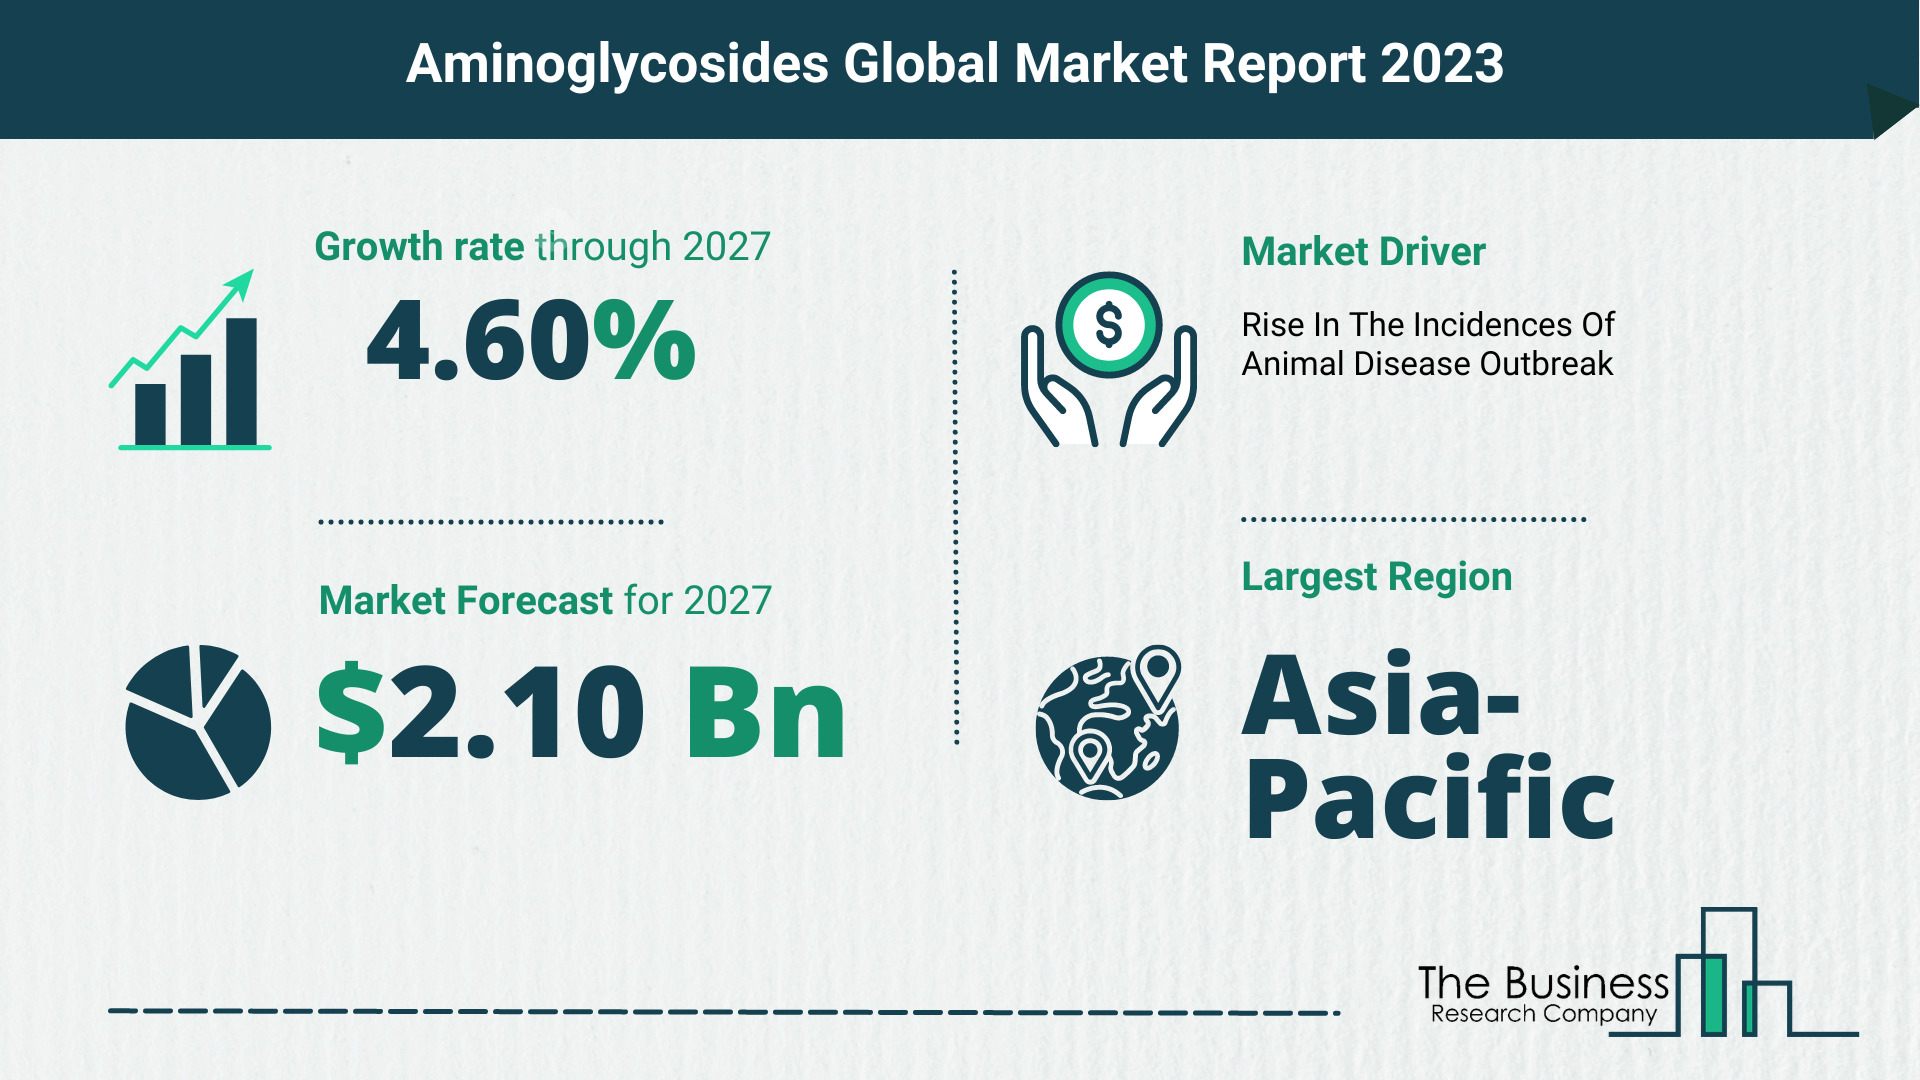 Global Aminoglycosides Market